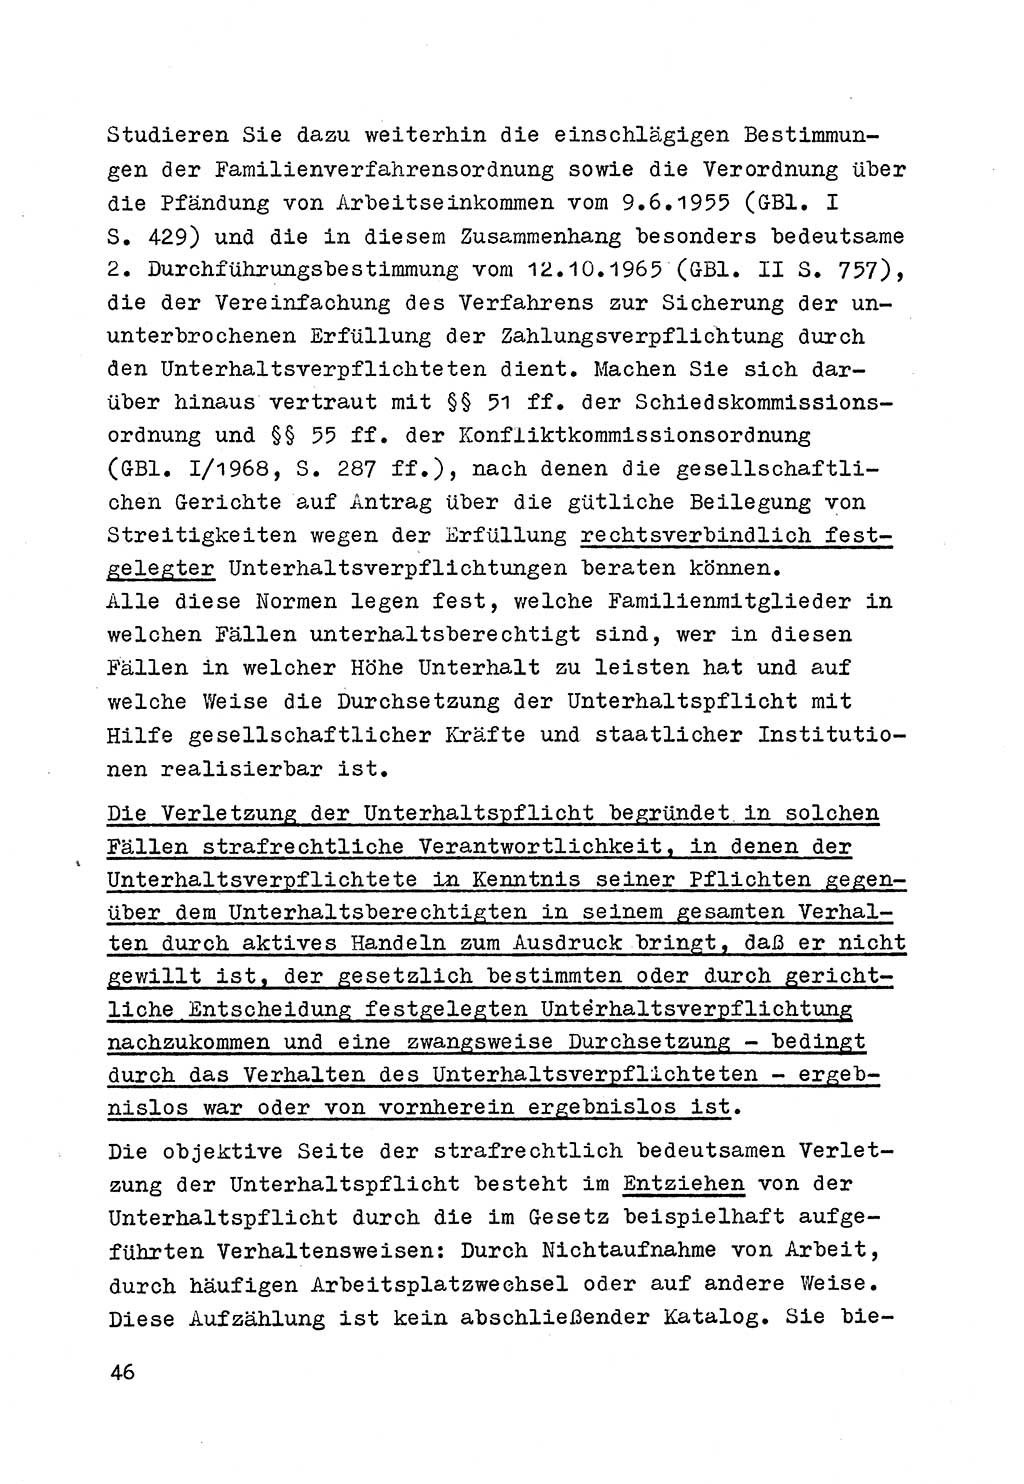 Strafrecht der DDR (Deutsche Demokratische Republik), Besonderer Teil, Lehrmaterial, Heft 4 1969, Seite 46 (Strafr. DDR BT Lehrmat. H. 4 1969, S. 46)